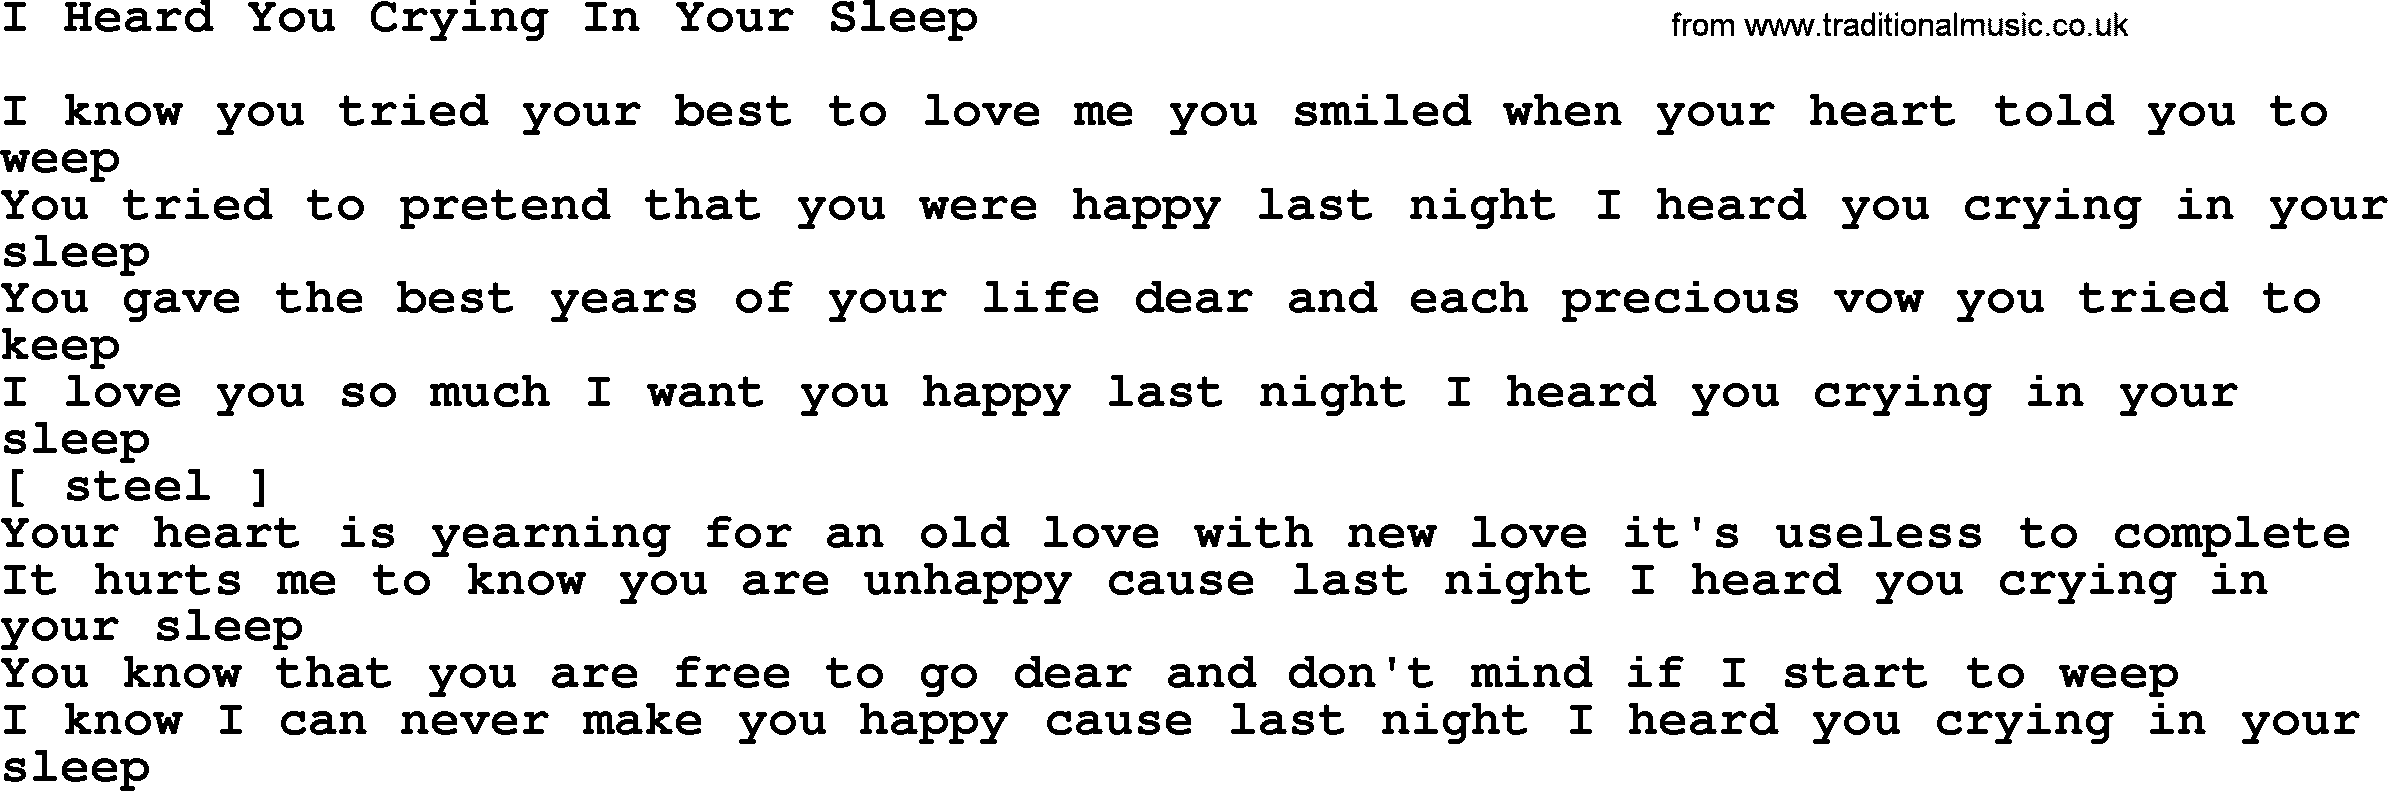 George Jones song: I Heard You Crying In Your Sleep, lyrics